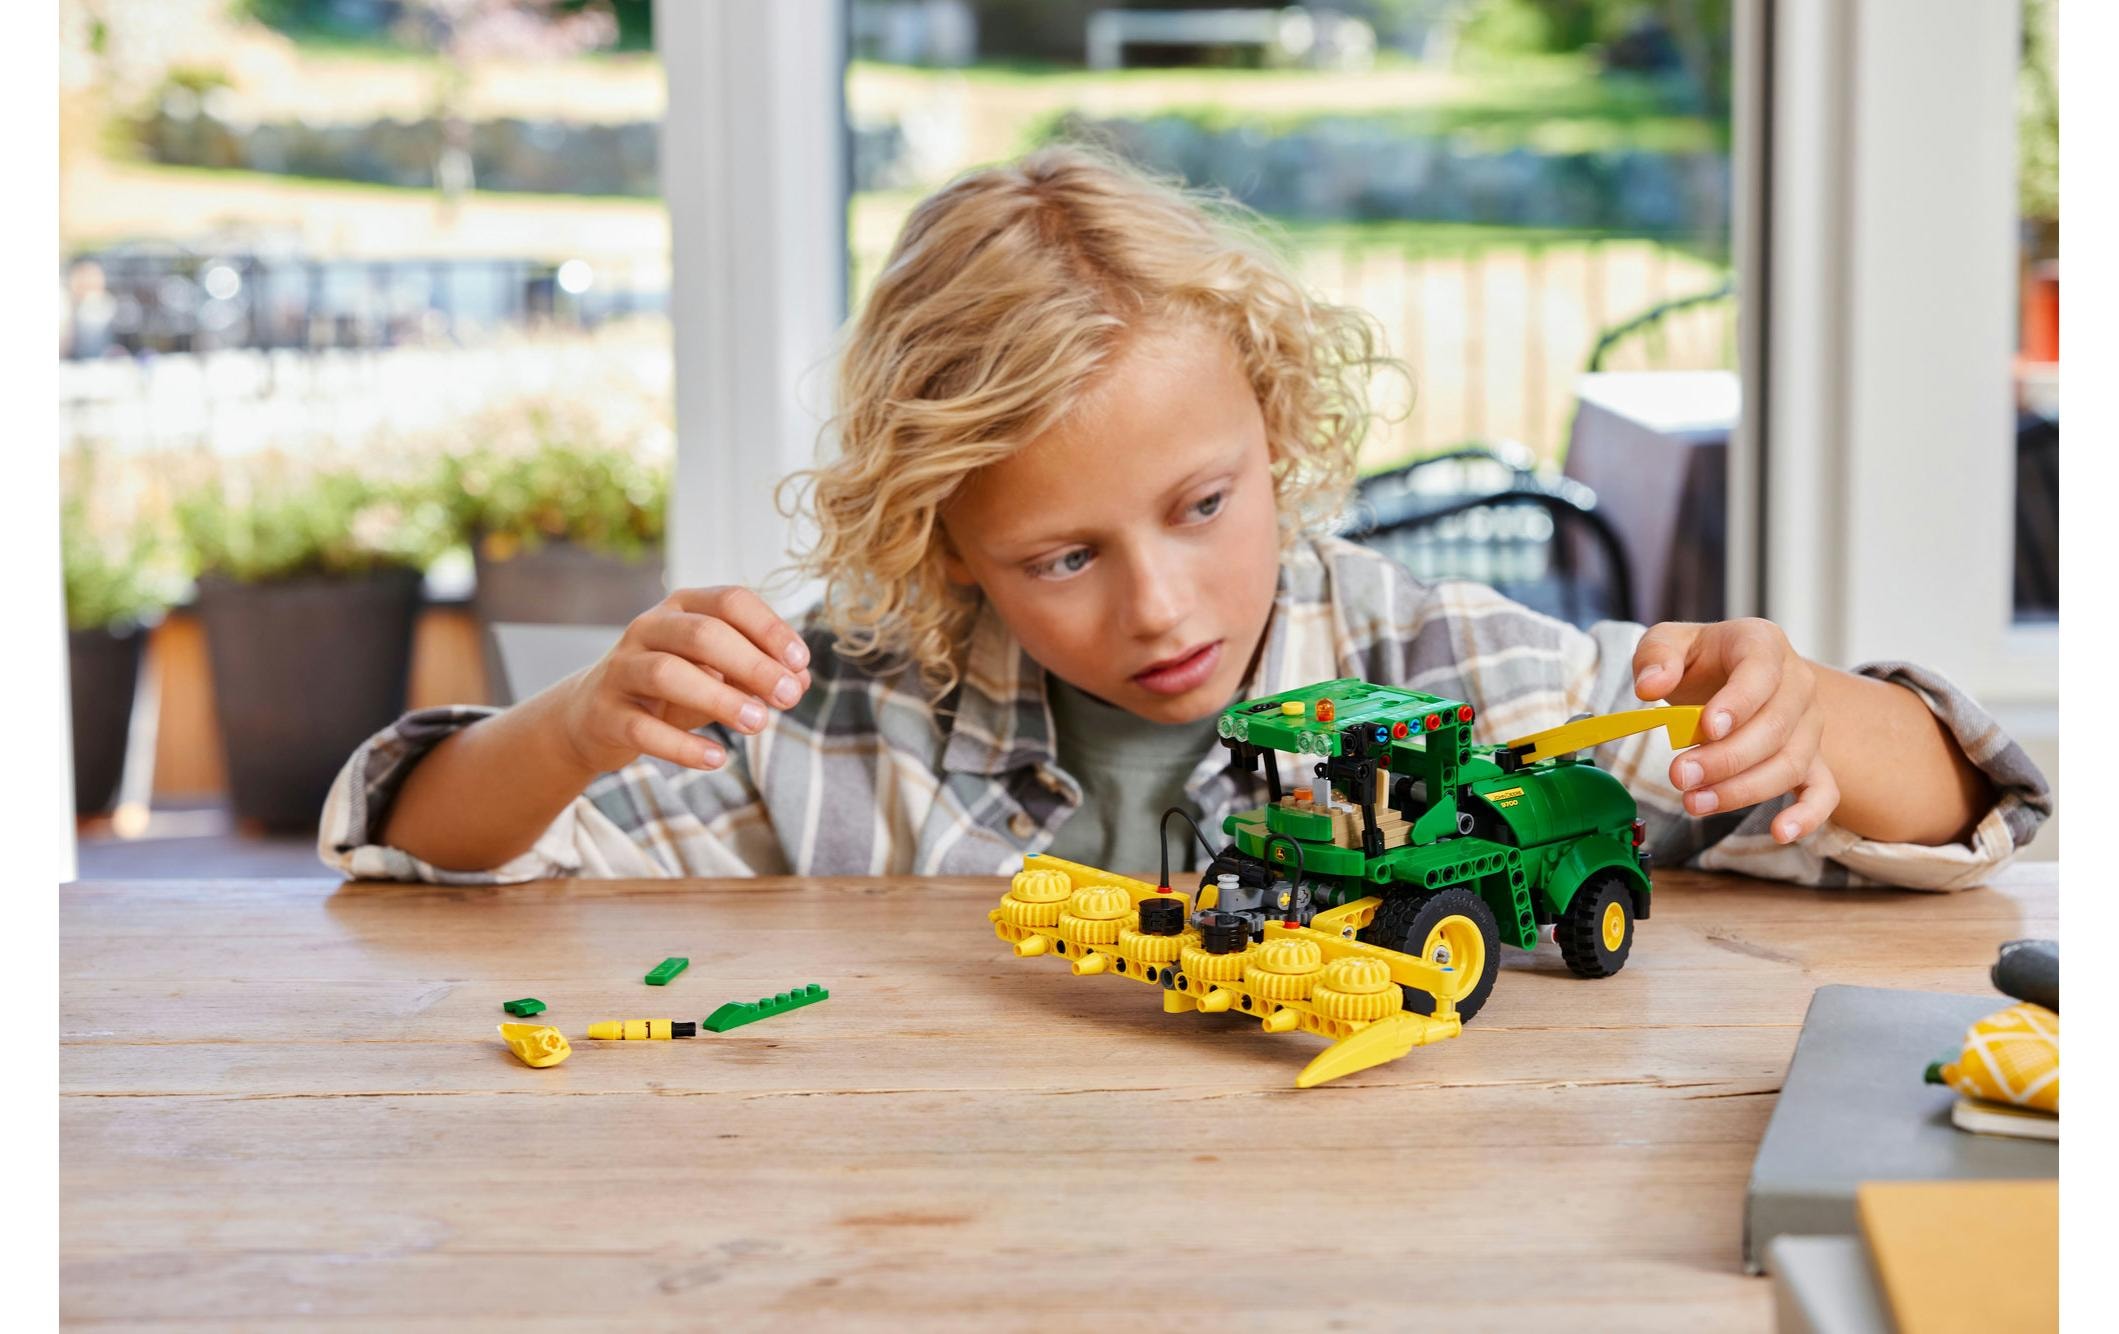 LEGO® Spielbausteine »John Deere 9700 Forage Harvester 42168«, (559 St.)